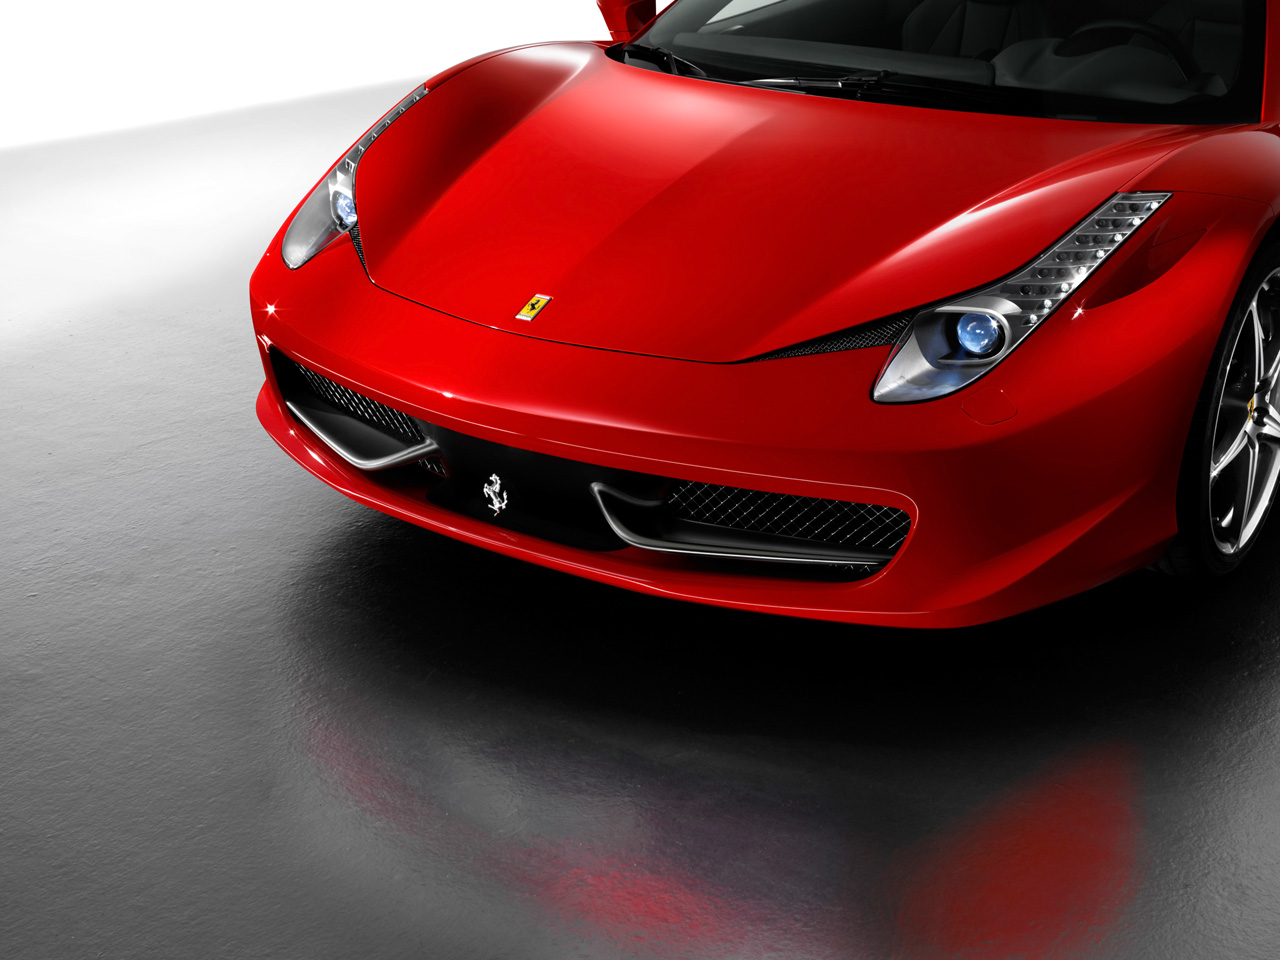 Download HQ front1 Ferrari wallpaper / 1280x960